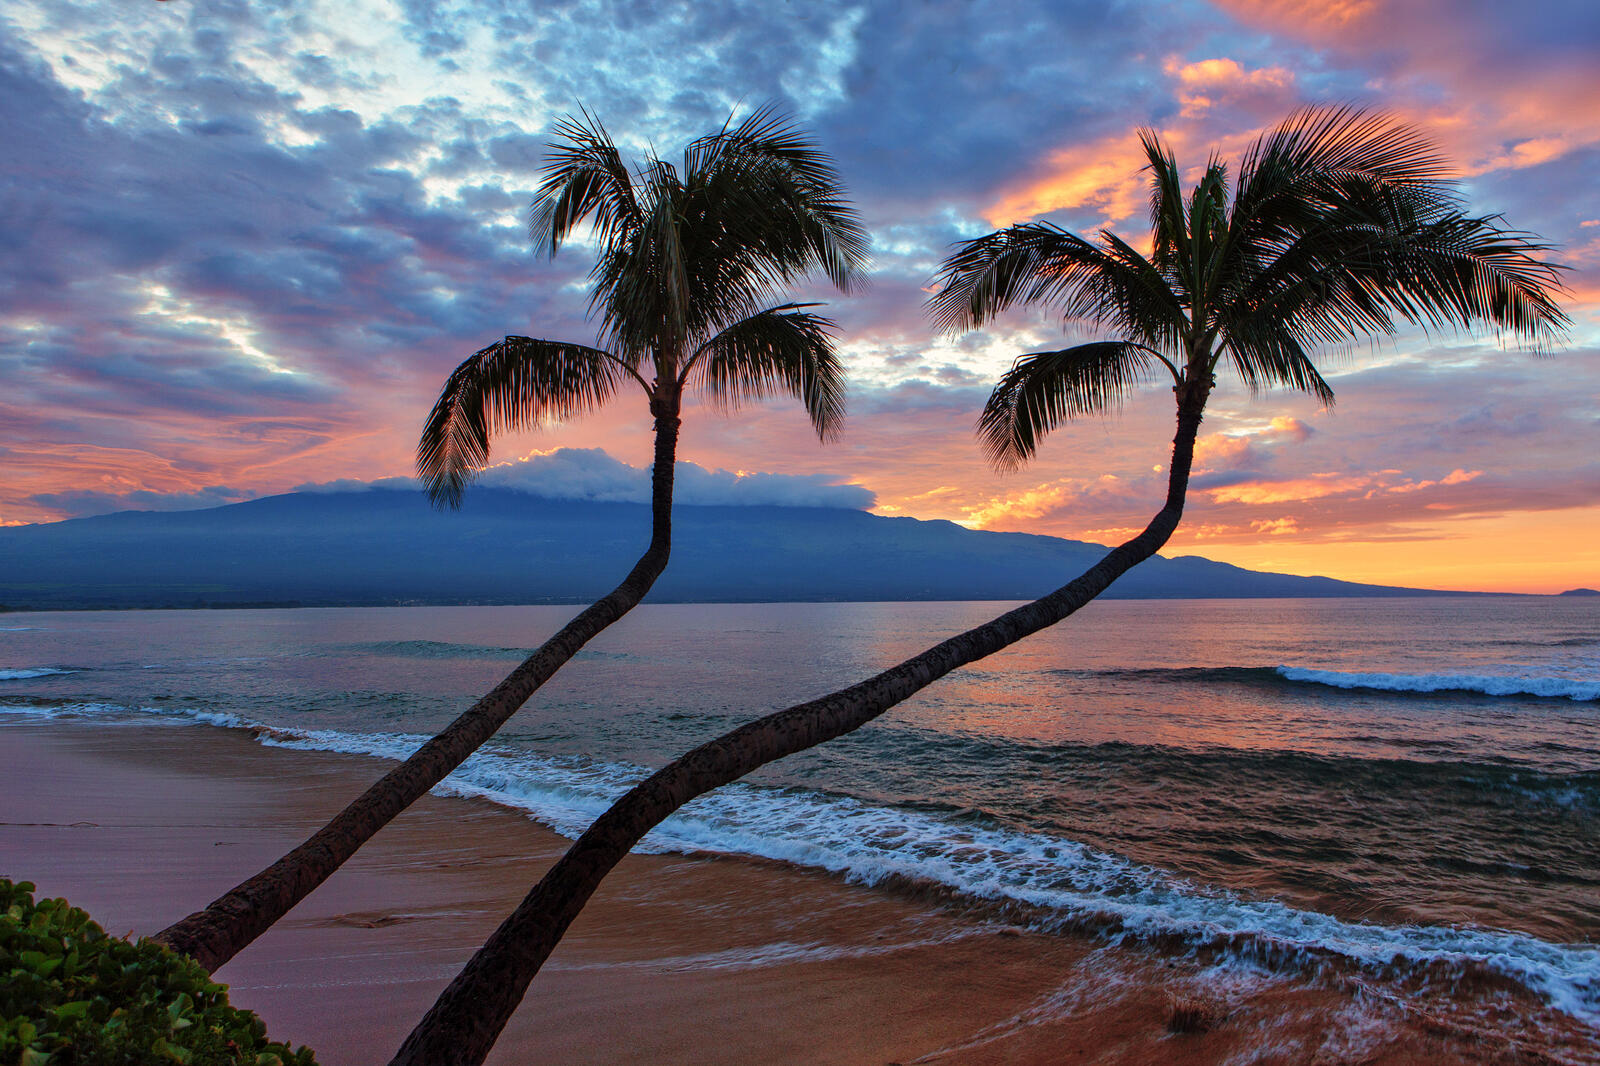 Обои Sunrise Over Halelakakla Maui Hawaii на рабочий стол